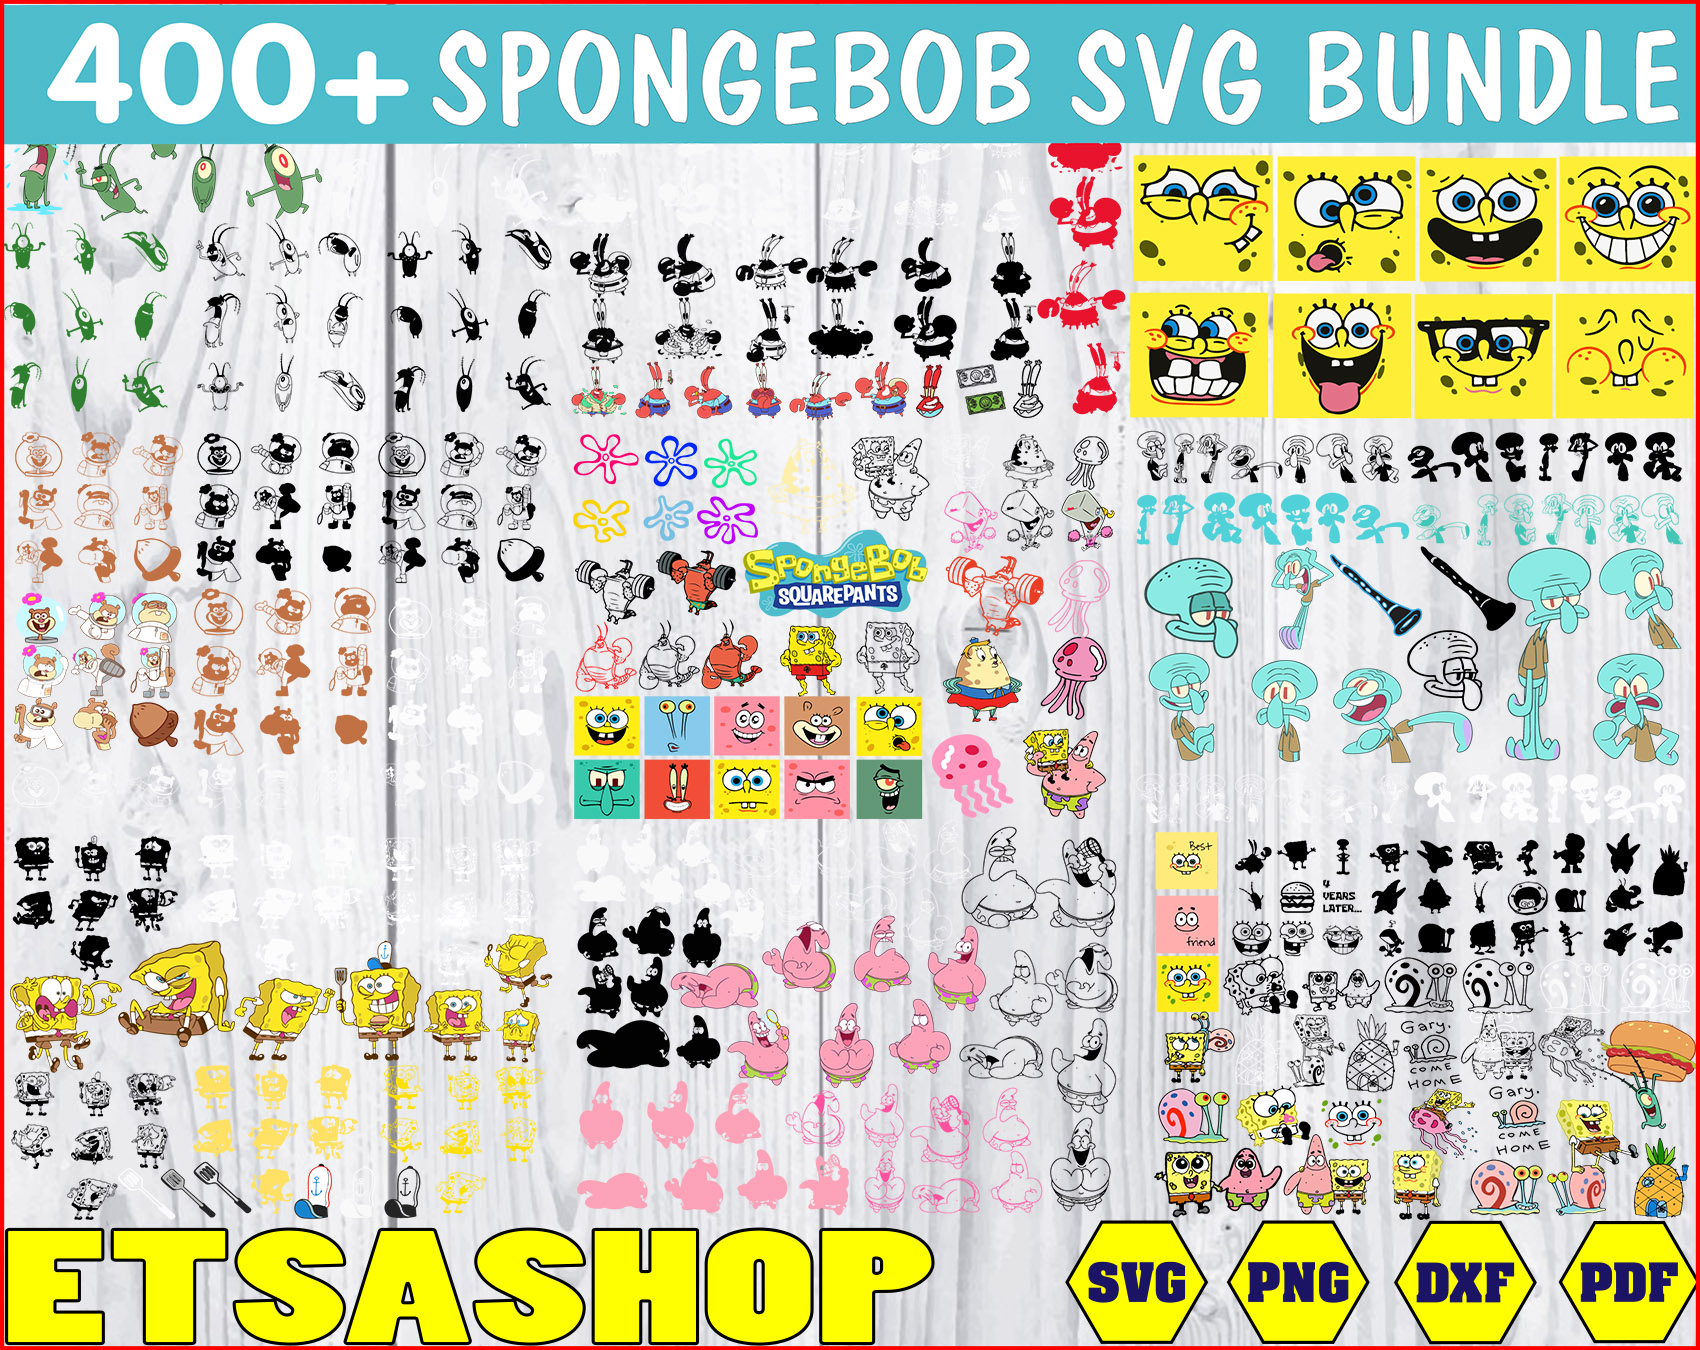 Download Spongebob Svg Bundle Spongebob Svg Png Dxf Spongebob Clipart Bundle Digital Download Outstanding And Different